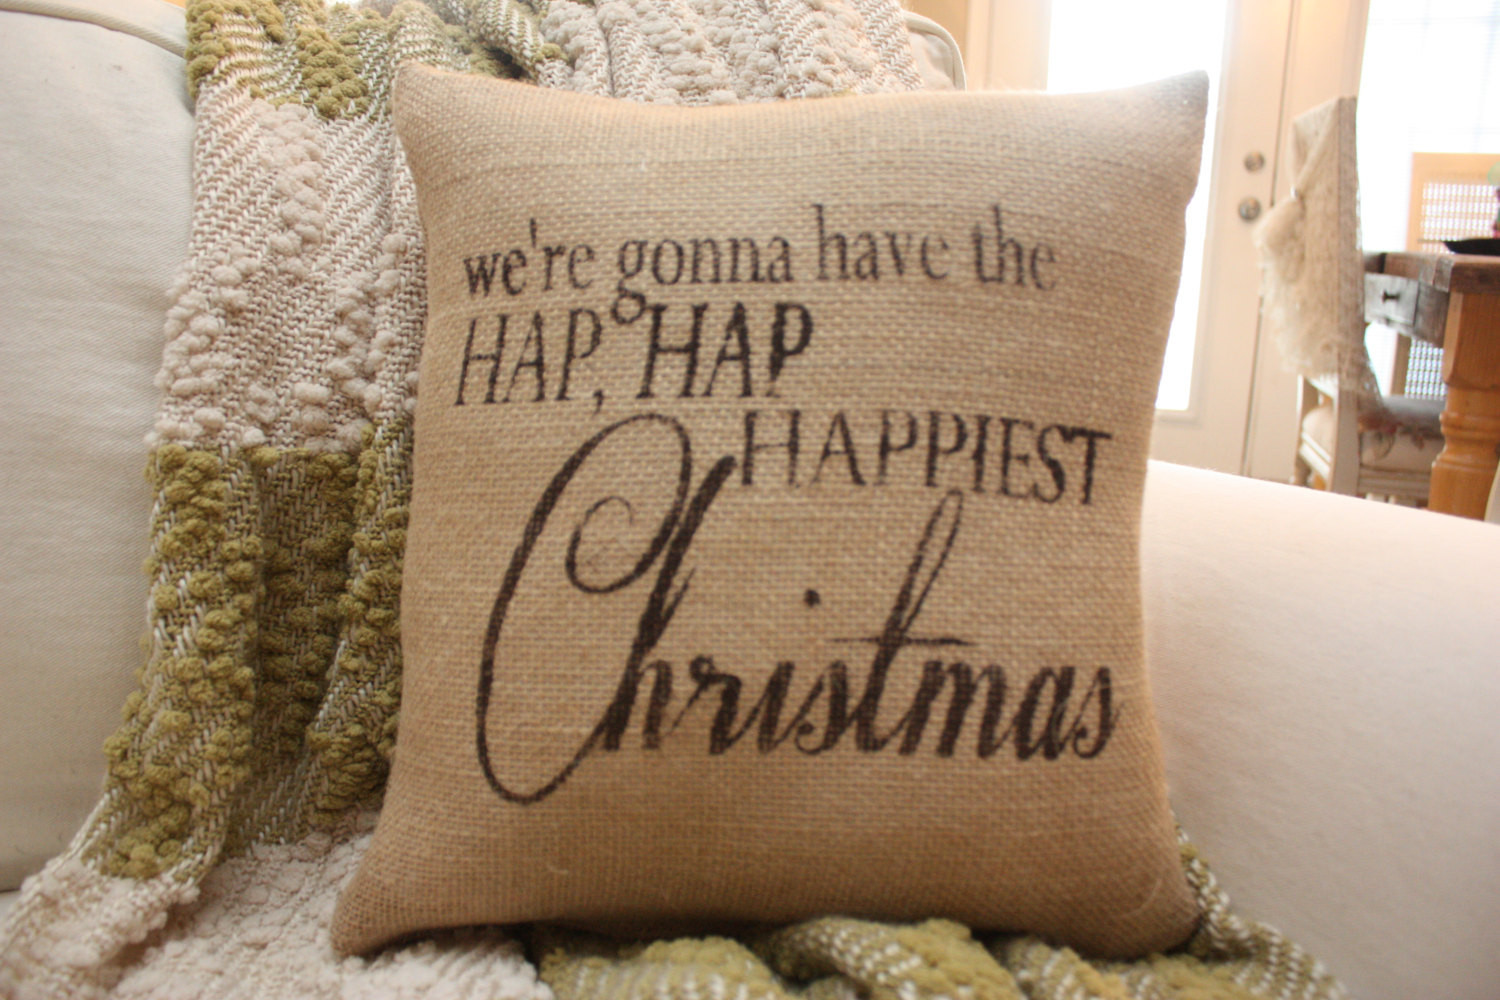 Hap Hap Happiest Christmas Quote
 The Best Hap Hap Happiest Christmas Quote Home